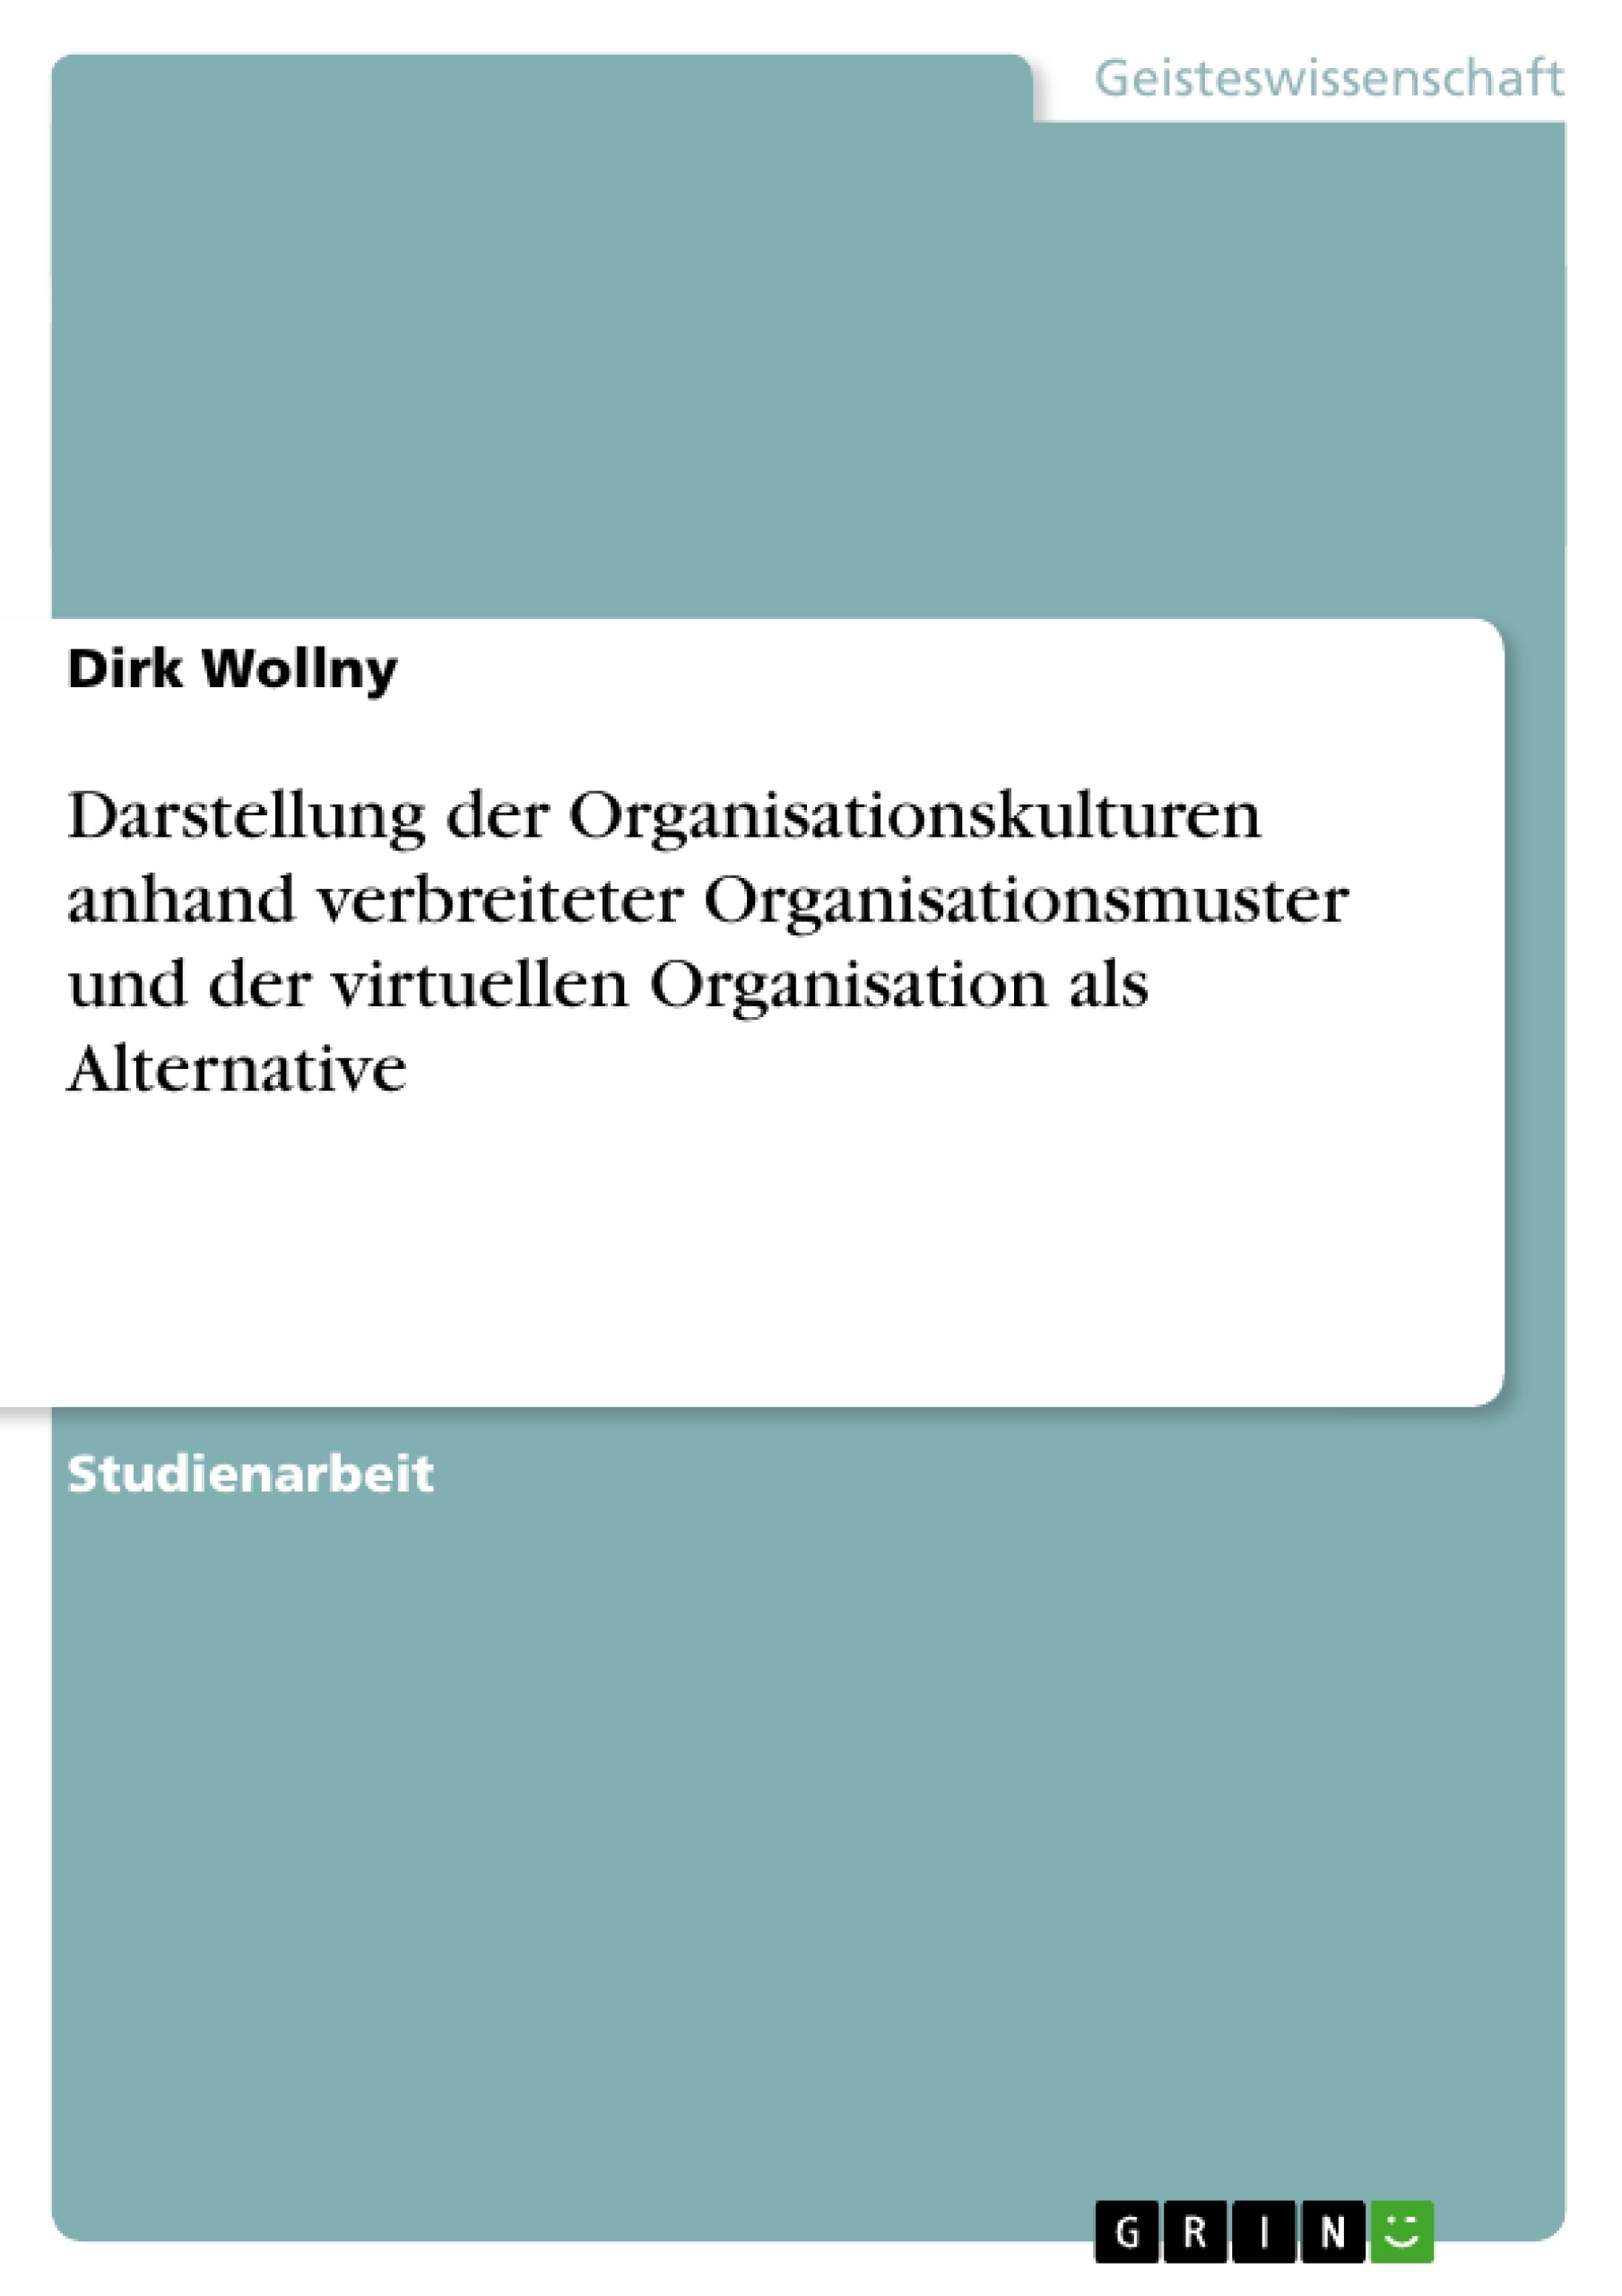 Título: Darstellung der Organisationskulturen anhand verbreiteter Organisationsmuster und der virtuellen Organisation als Alternative